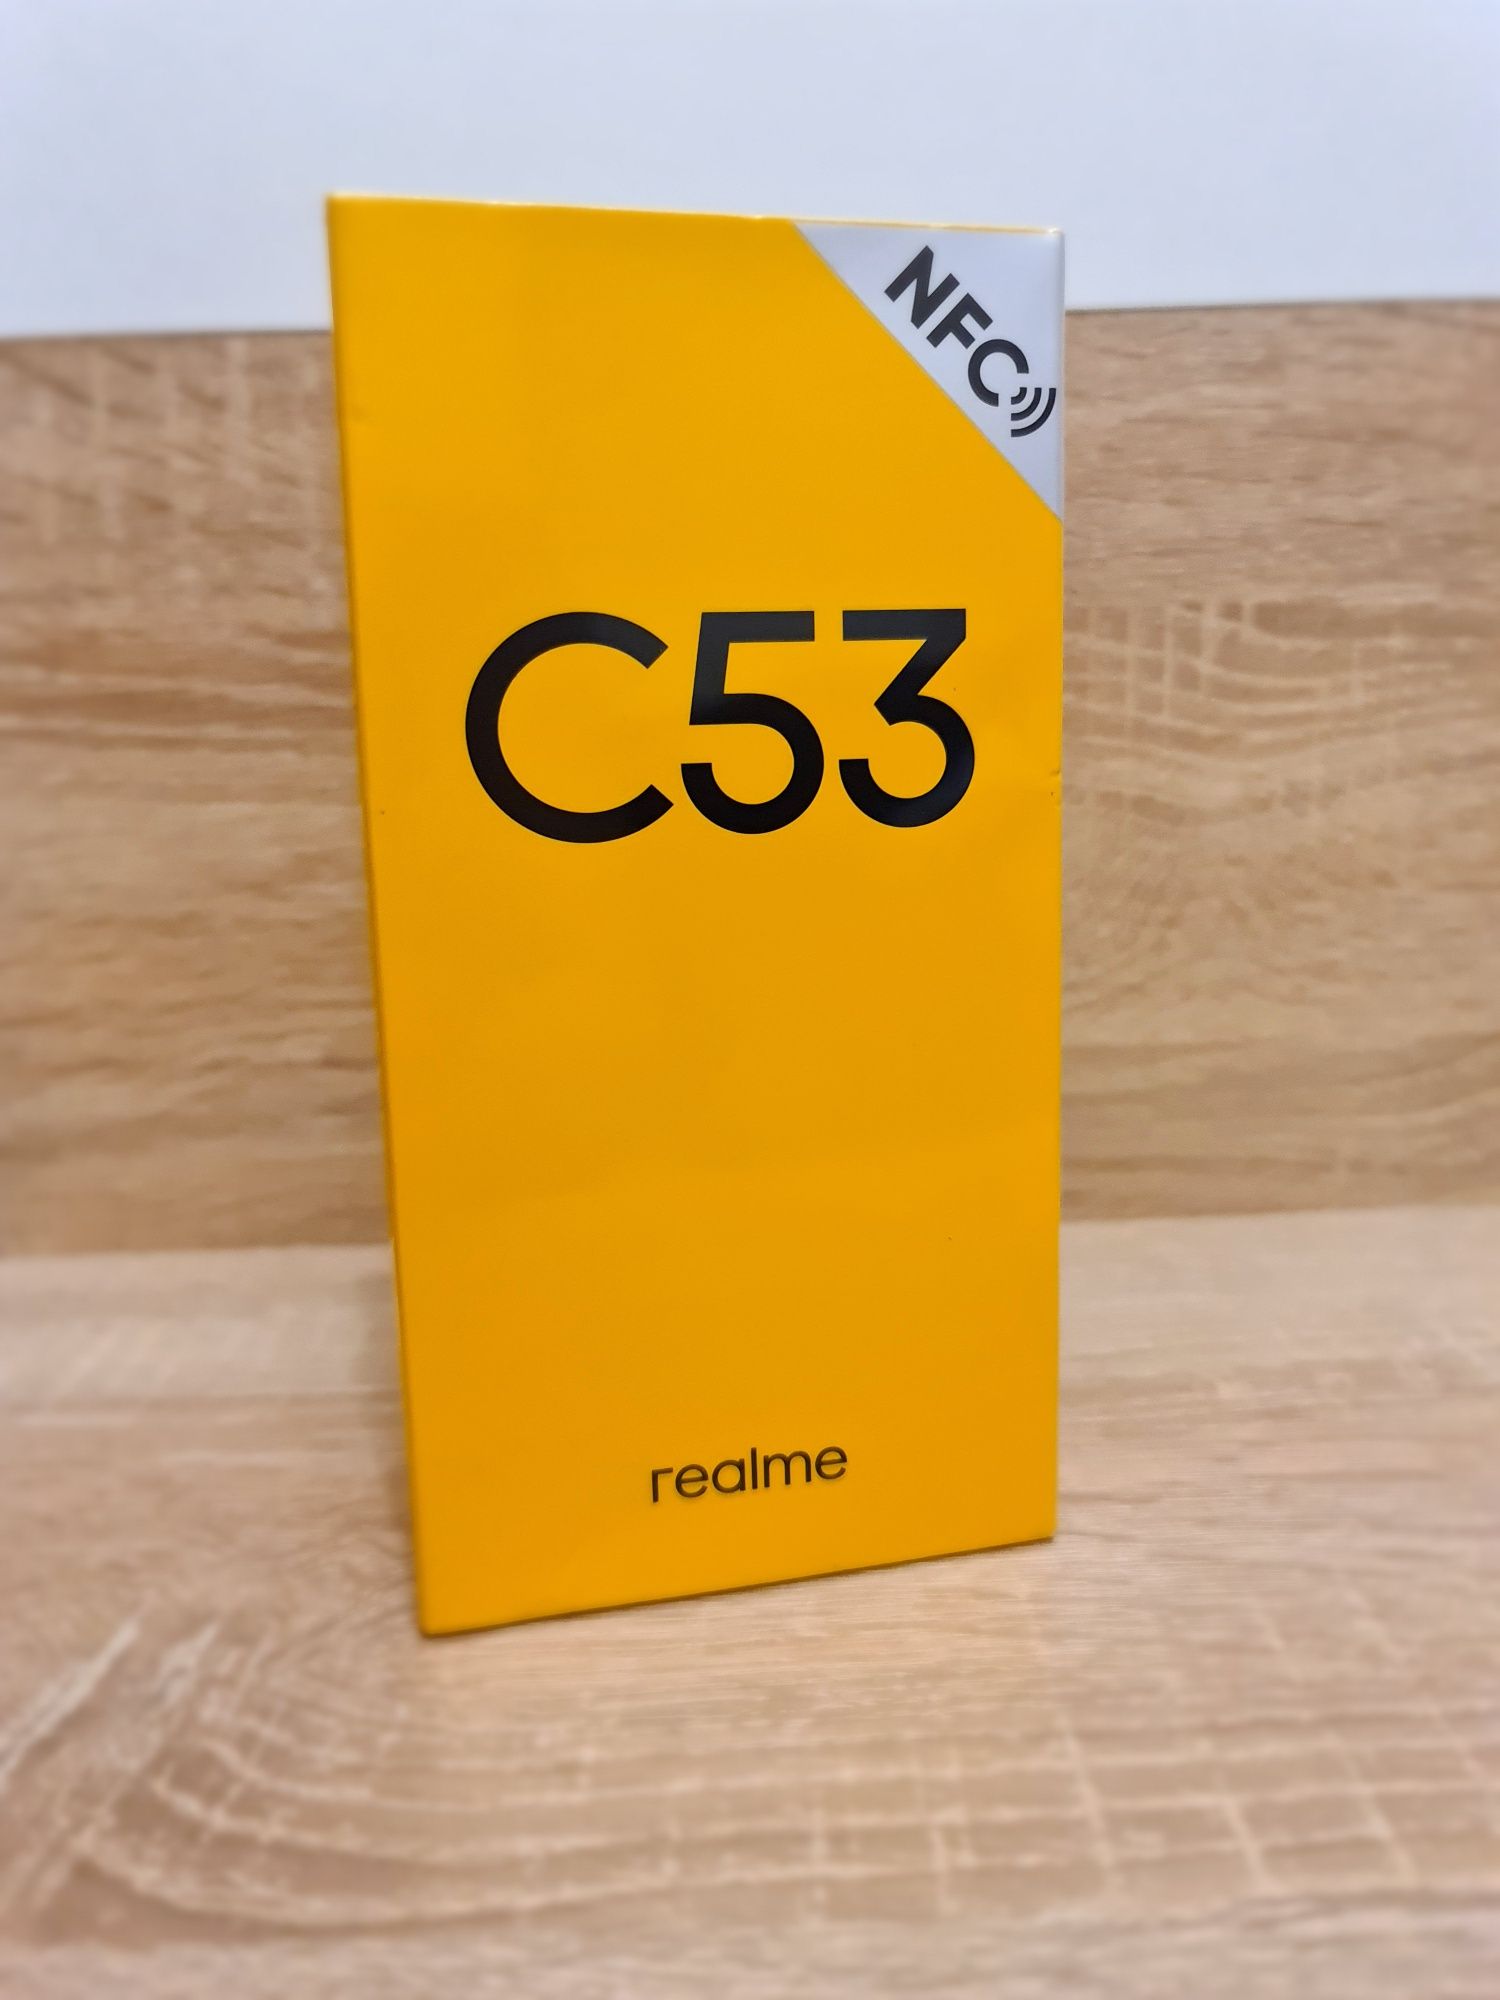 Продам новый в упаковке телефон Realme C53